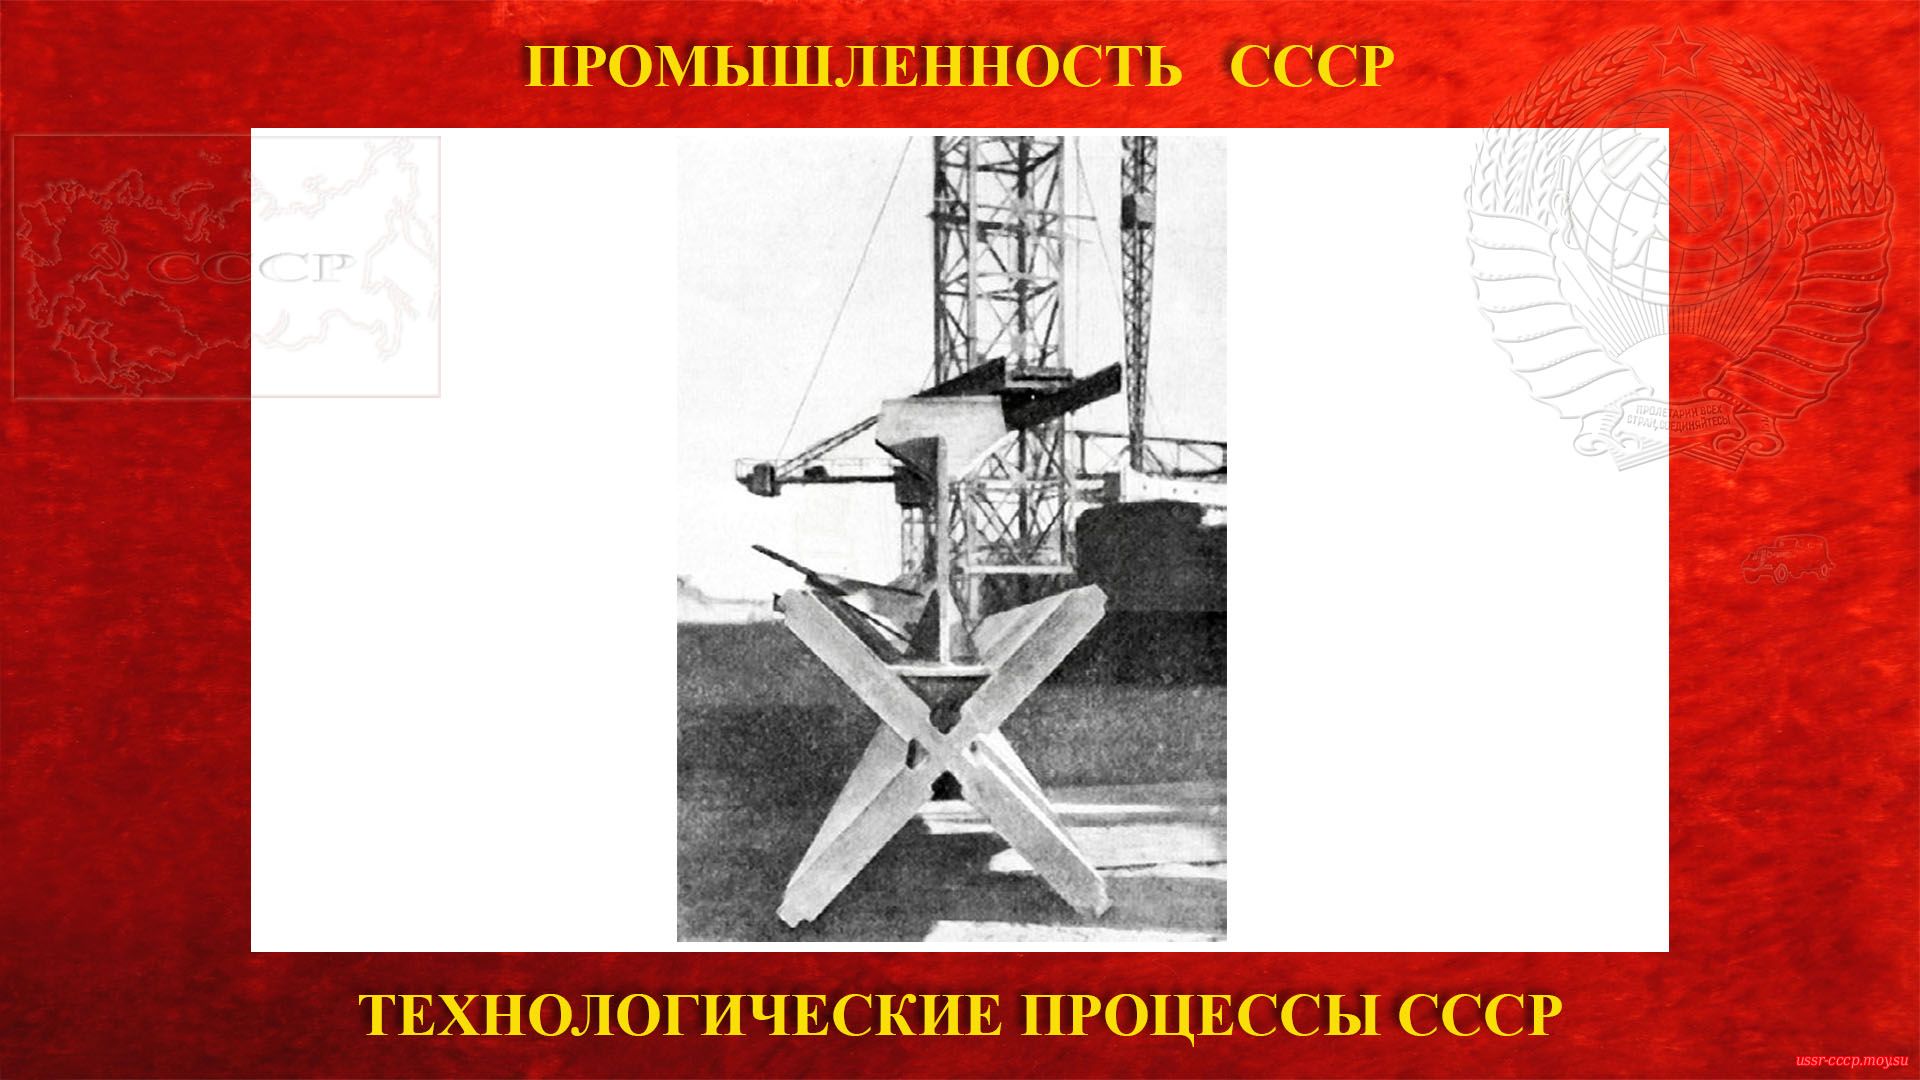 Основы металлических конструкций в СССР (повествование)